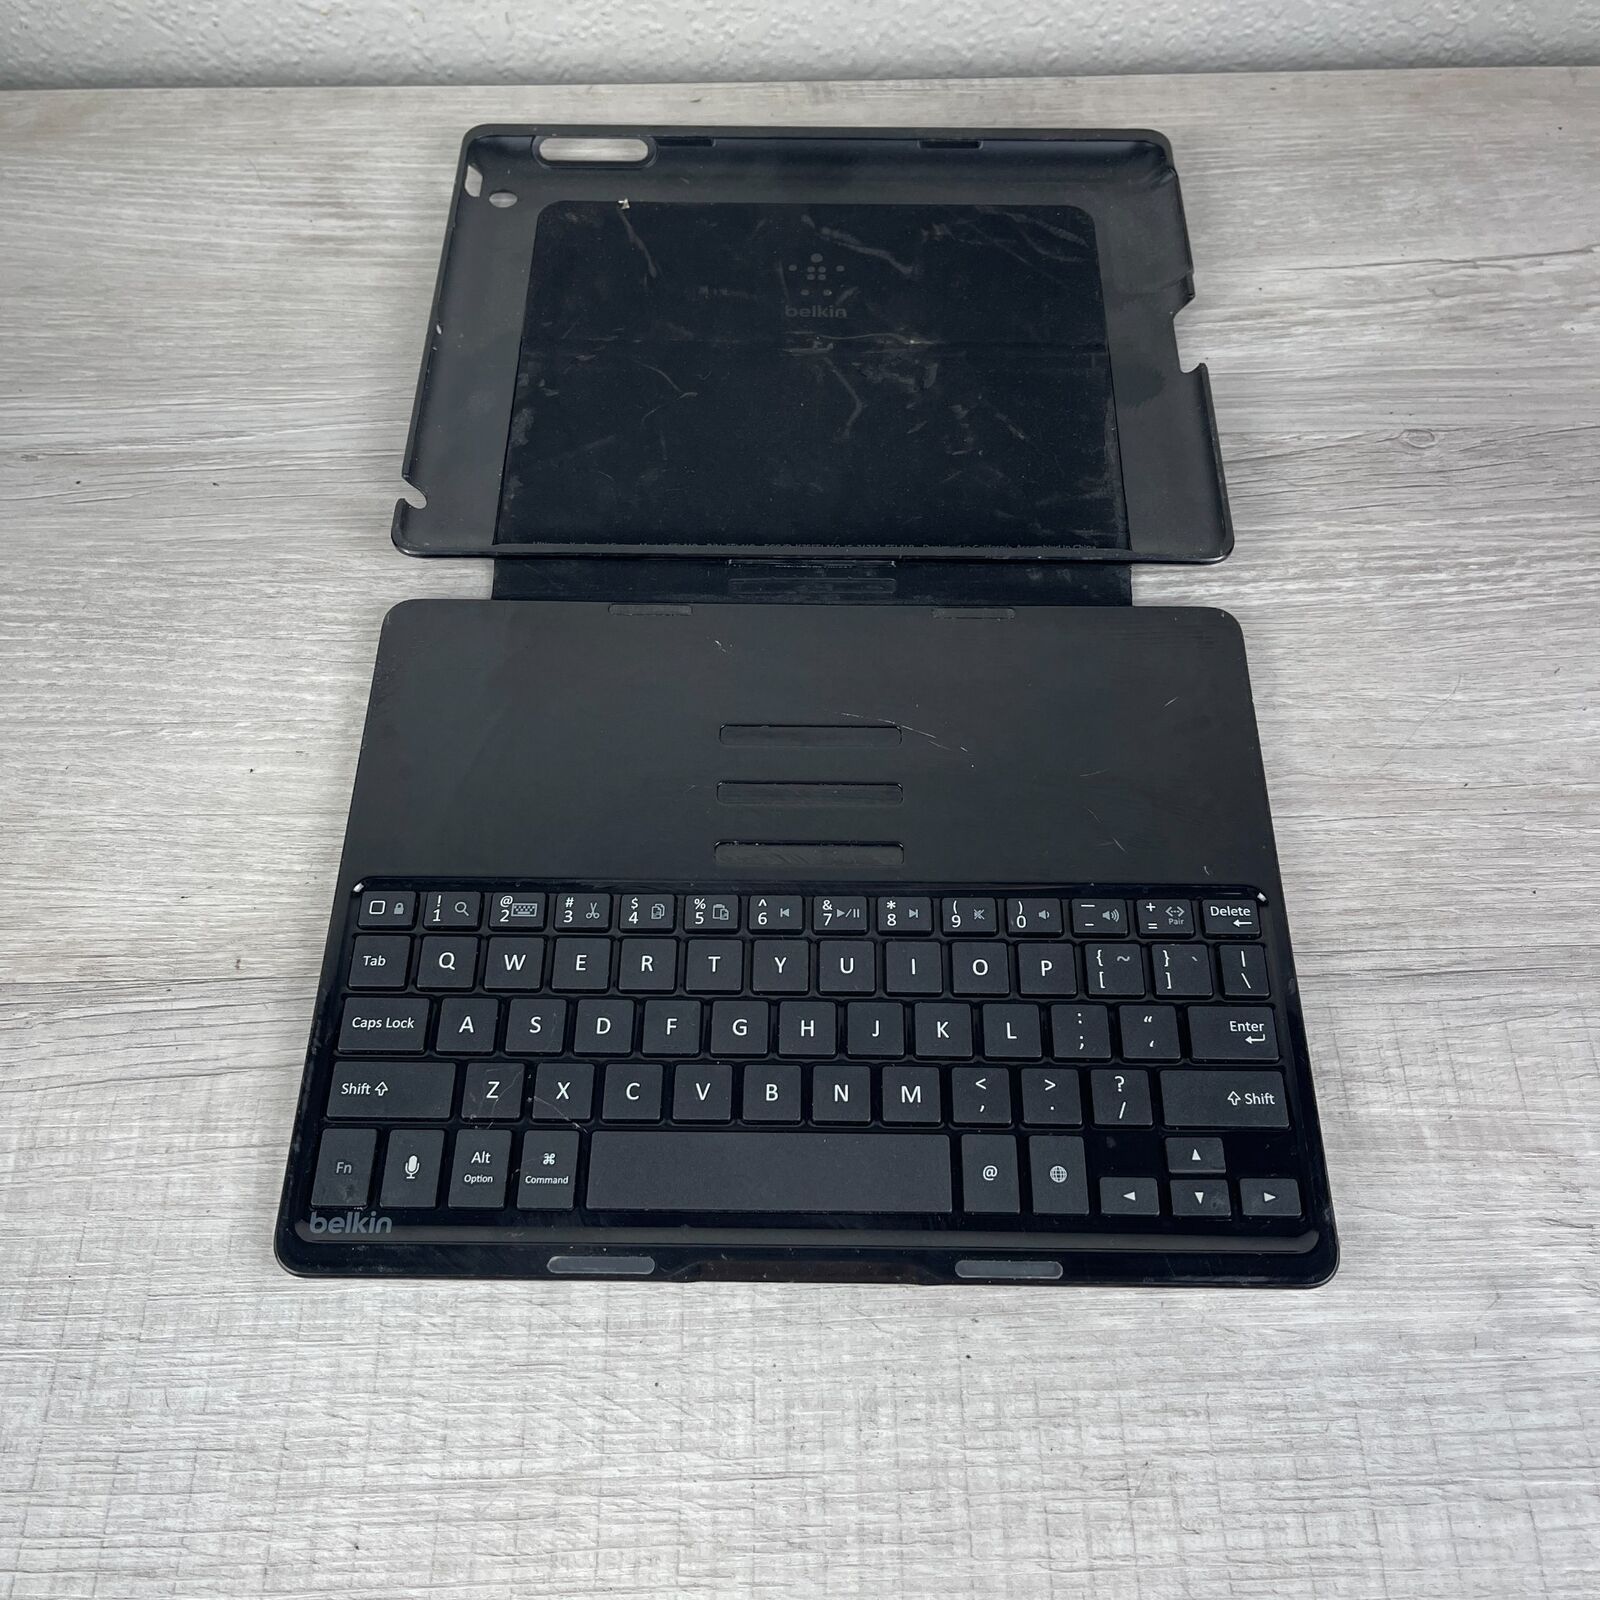 Belkin QODE F5L149 Black Wireless Bluetooth Ultimate Keyboard Case for iPad 2